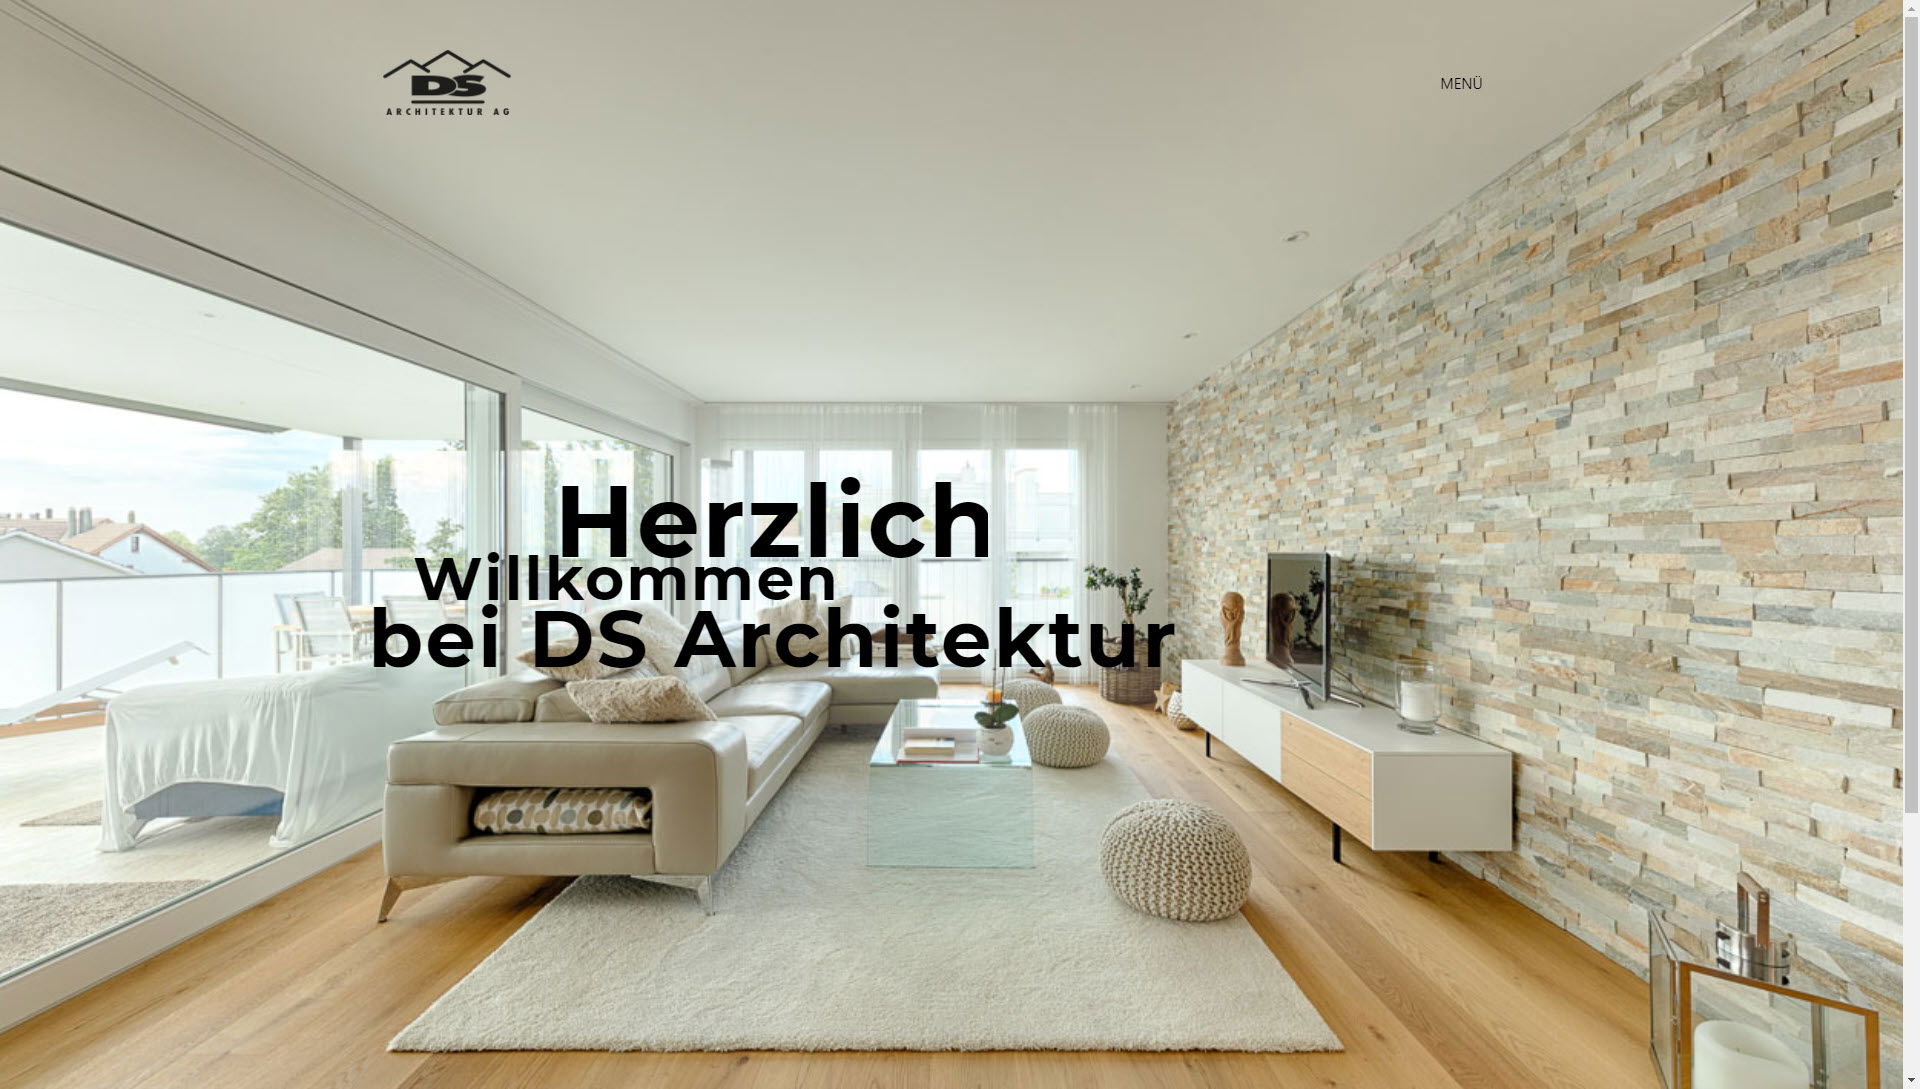 DS Architektur AG